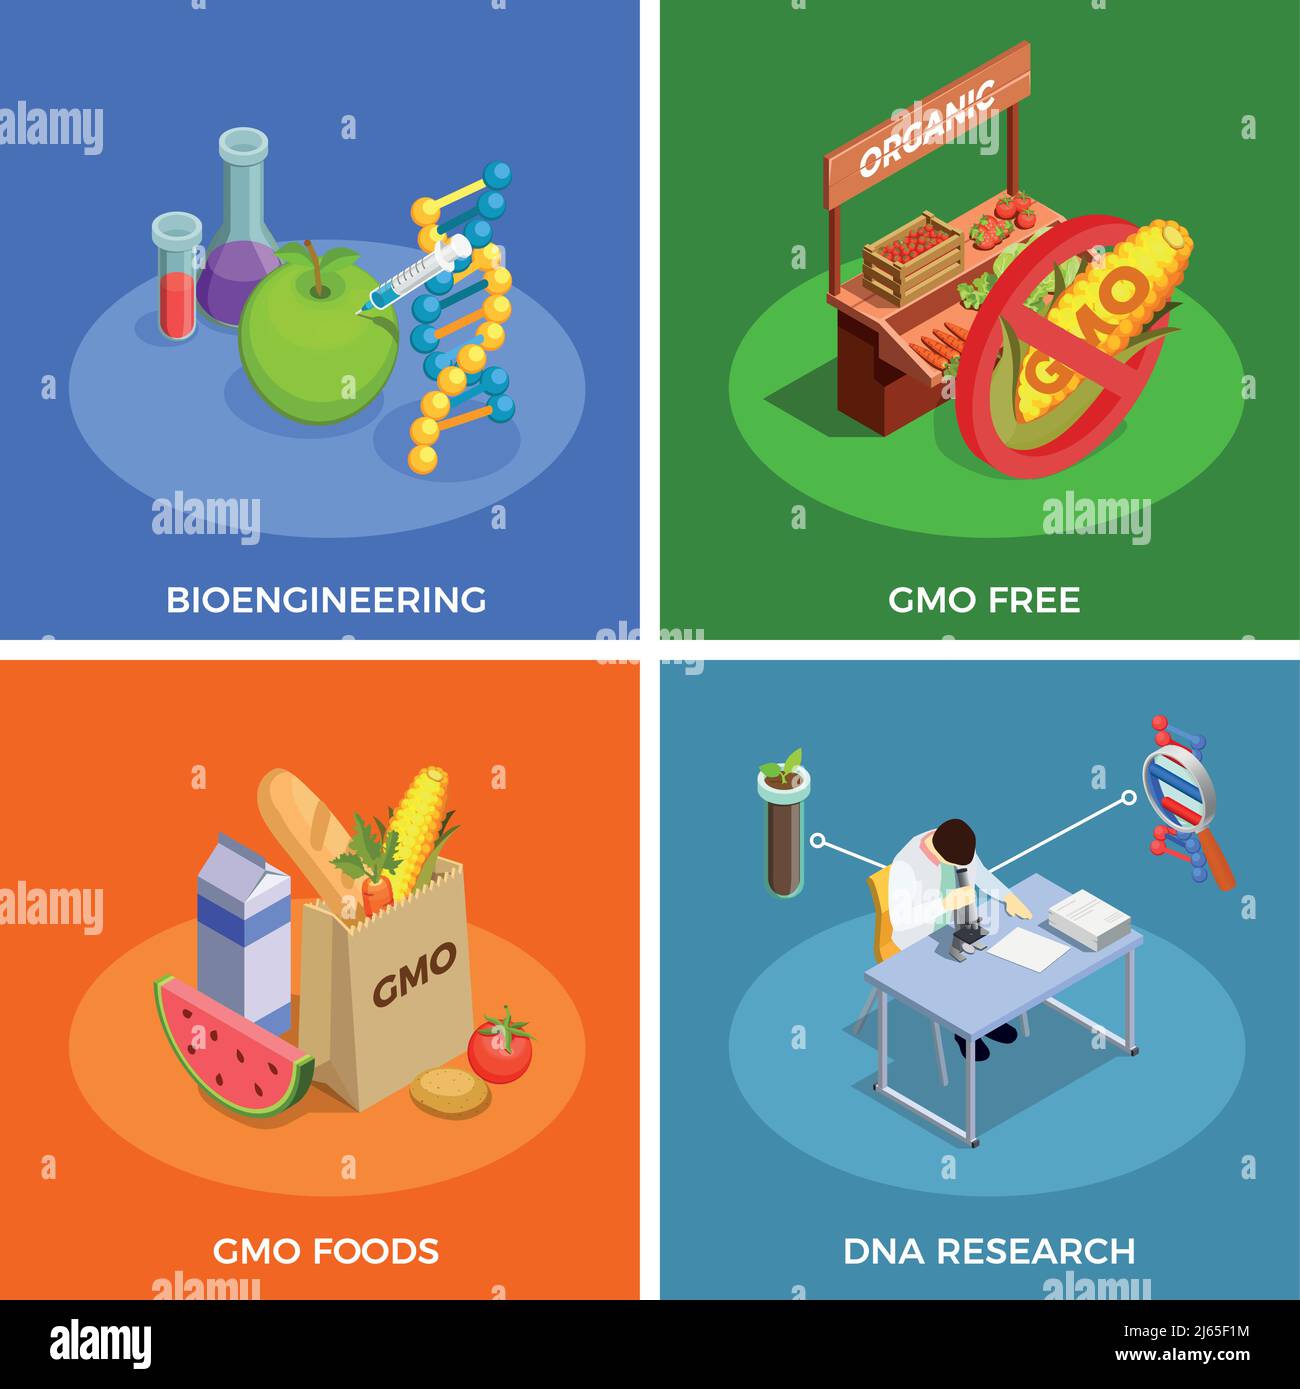 Organismes génétiquement modifiés concept de conception isométrique avec bio-ingénierie, recherche sur l'adn, aliments ogm illustration de vecteur isolé Illustration de Vecteur